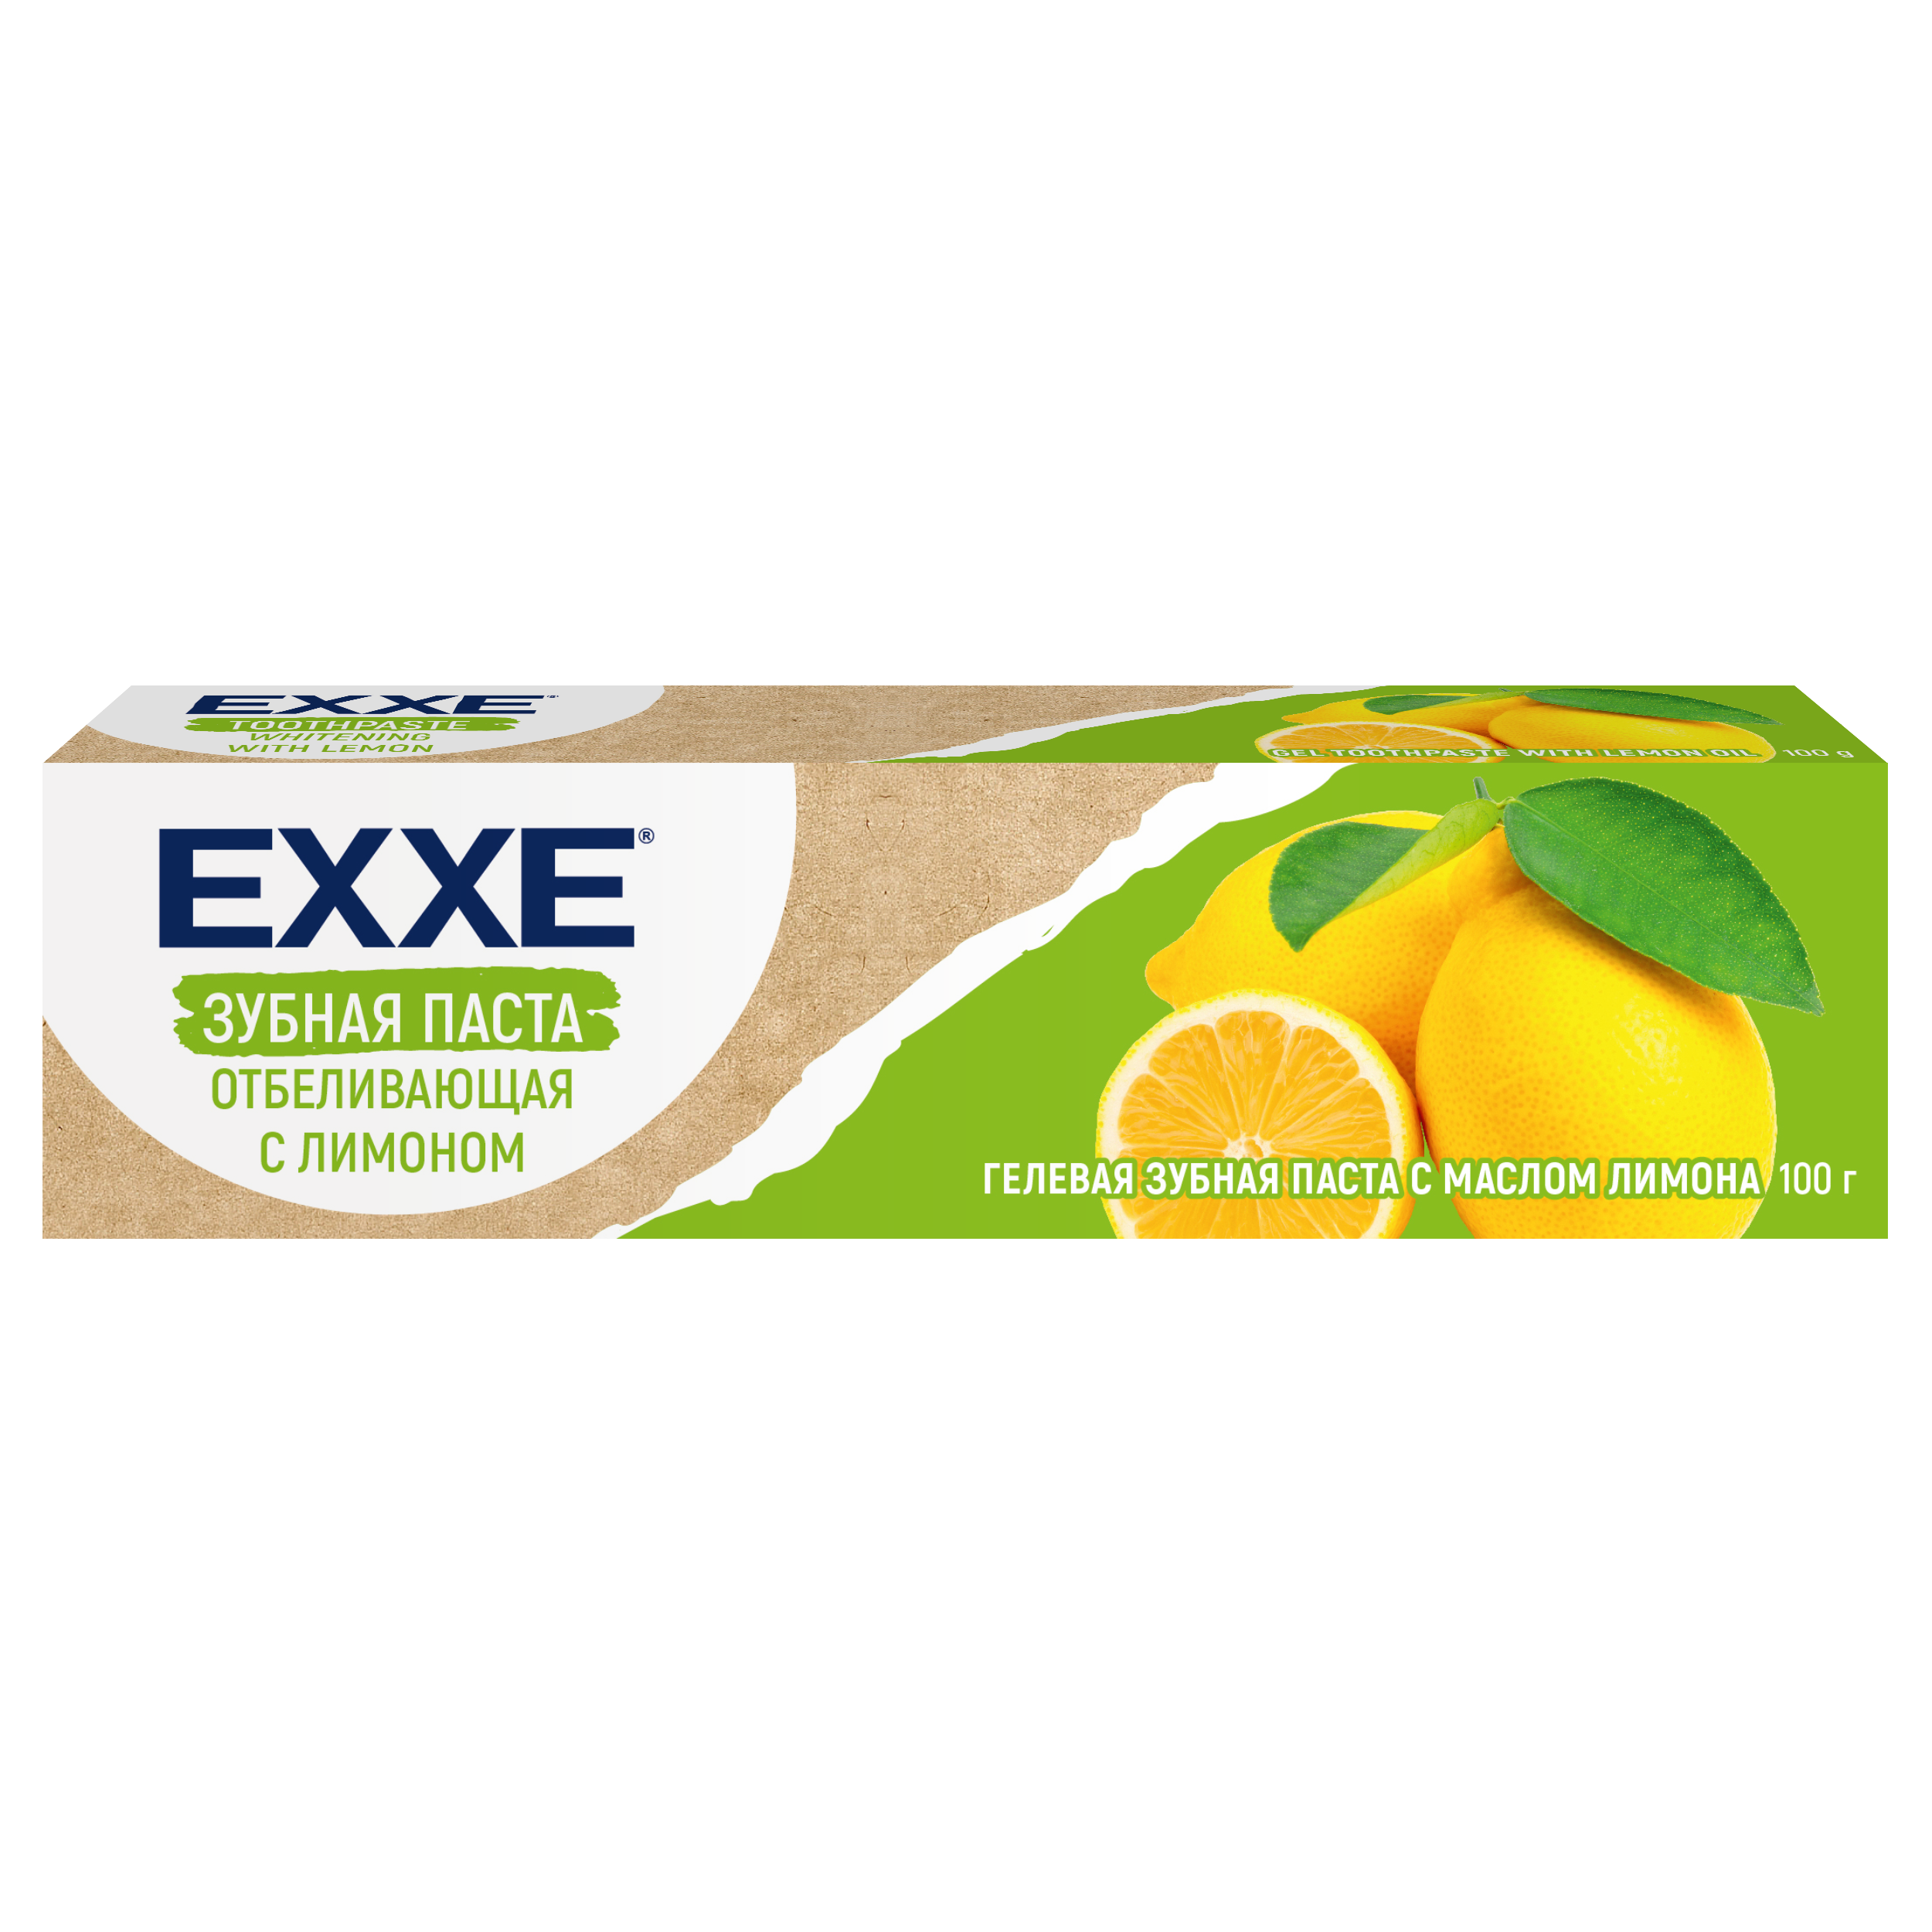 Зубная паста Exxe Отбеливающая с лимоном, 100 г органическая зубная паста endro lemon toothpaste с лимоном 100 мл